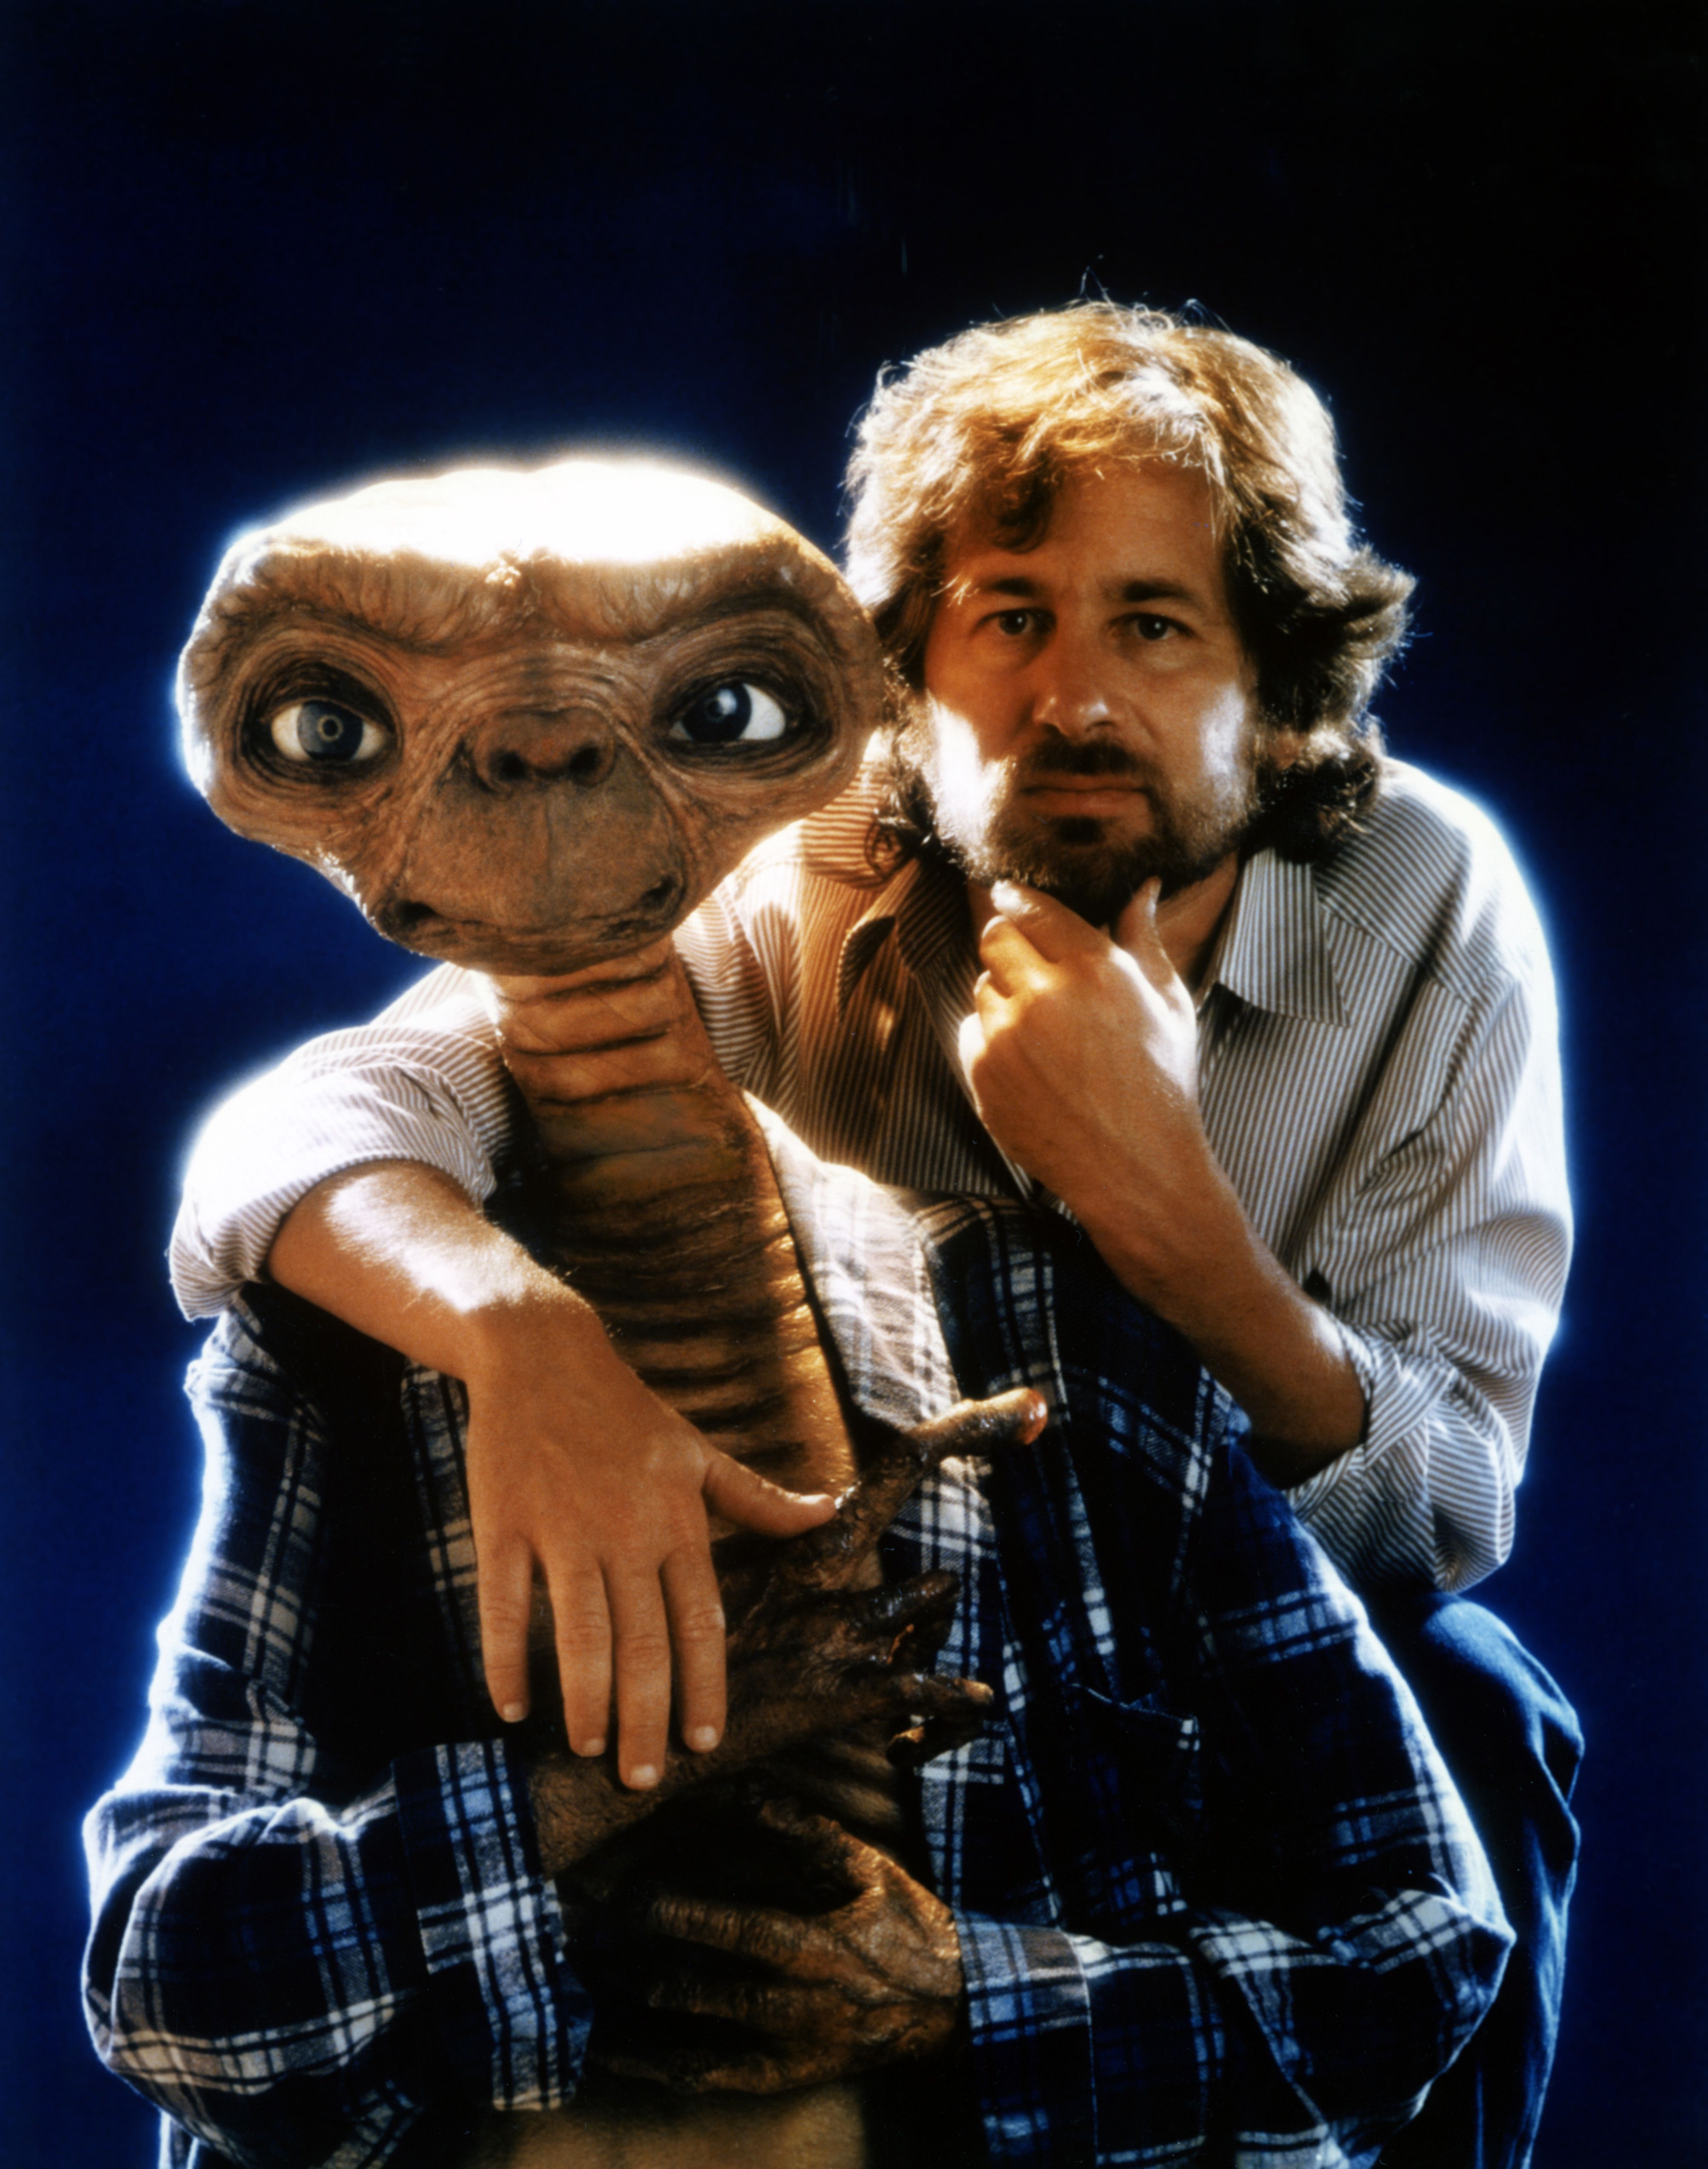 E.T.: El Extraterrestre se convirtió en un éxito sin precedentes, ganando casi USD 800 millones de dólares y siendo nominada a 9 premios Oscar
(Photo by Sunset Boulevard/Corbis via Getty Images)